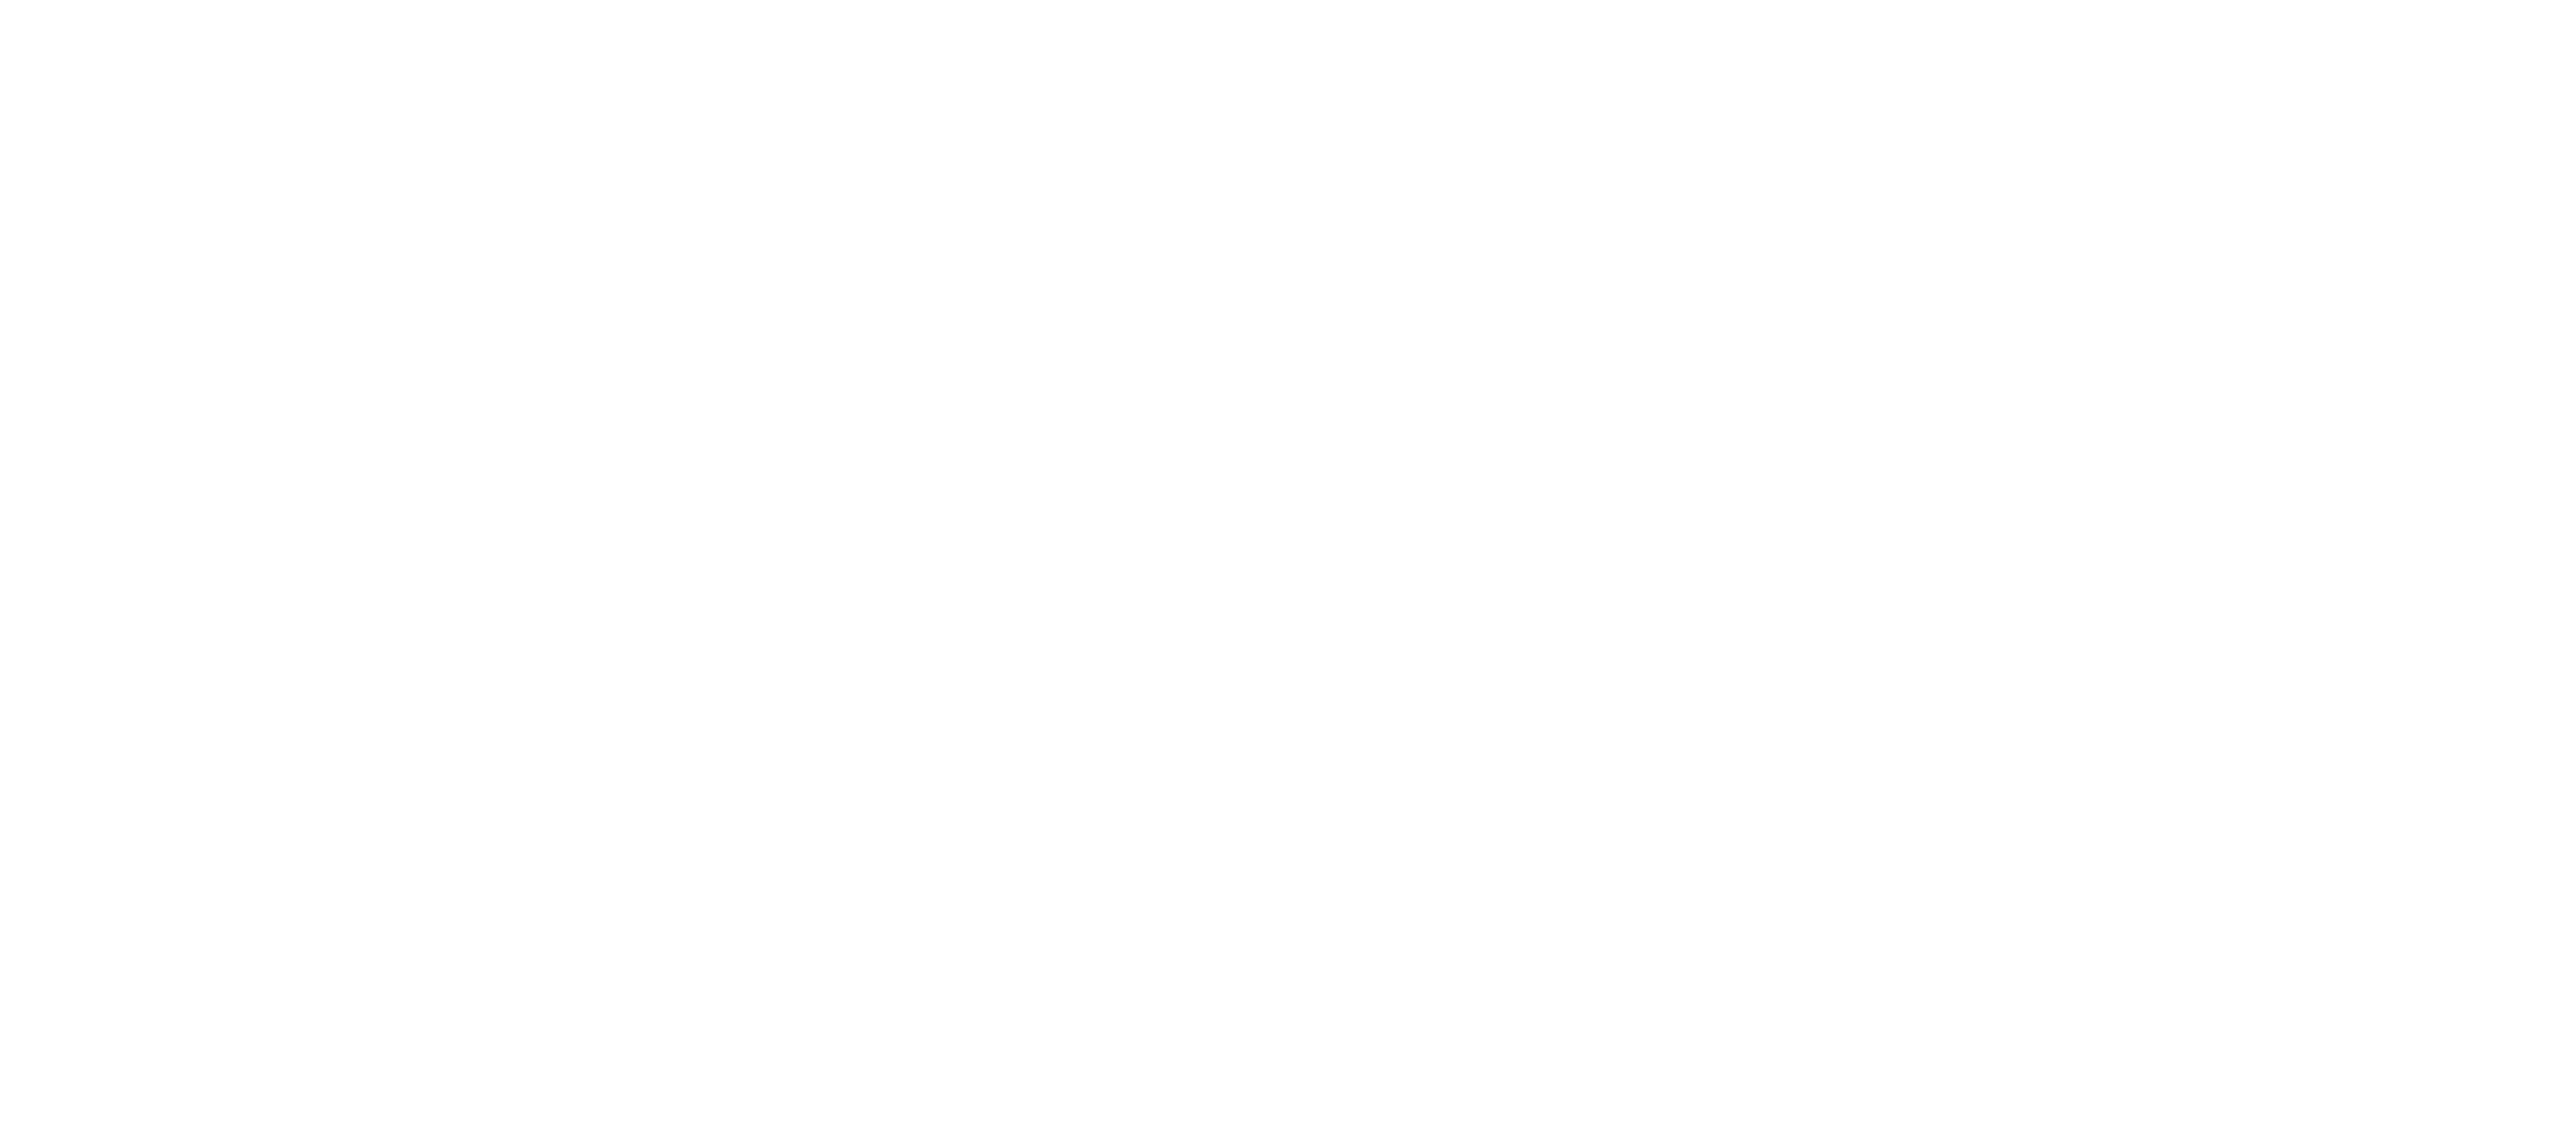 Shurtape Technologies Logo